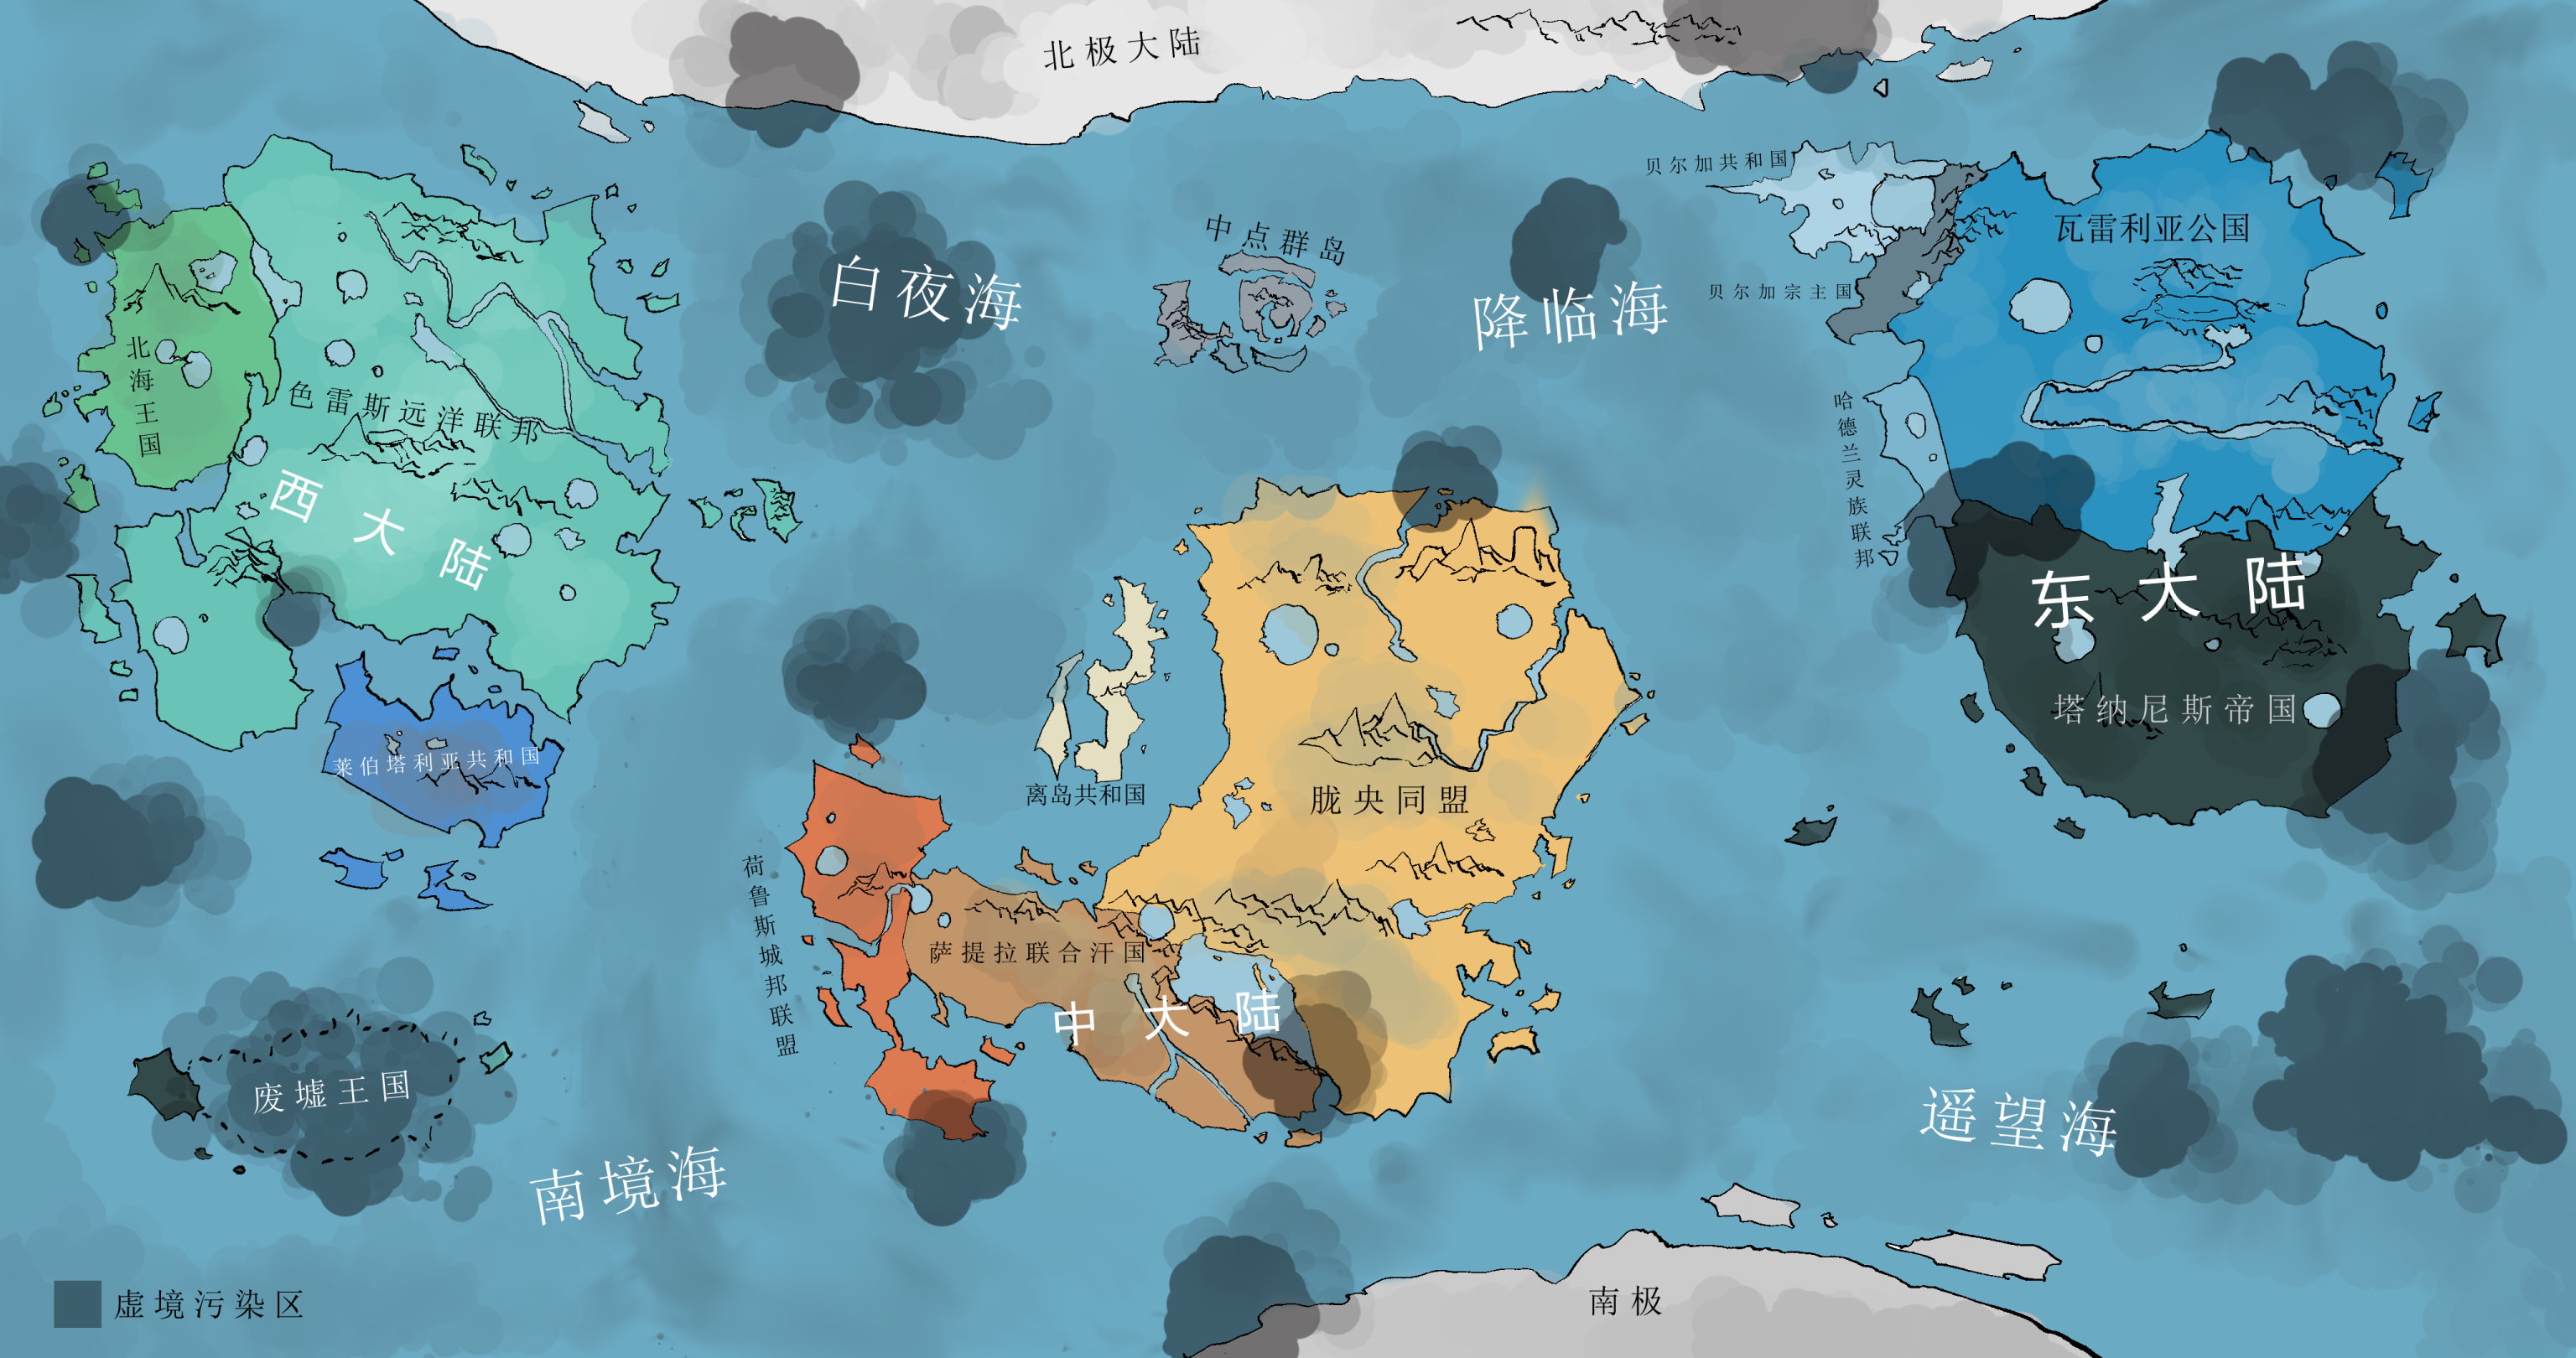 架空世界“四海”的地图，此为故事中“白银时代”历史阶段的版本。